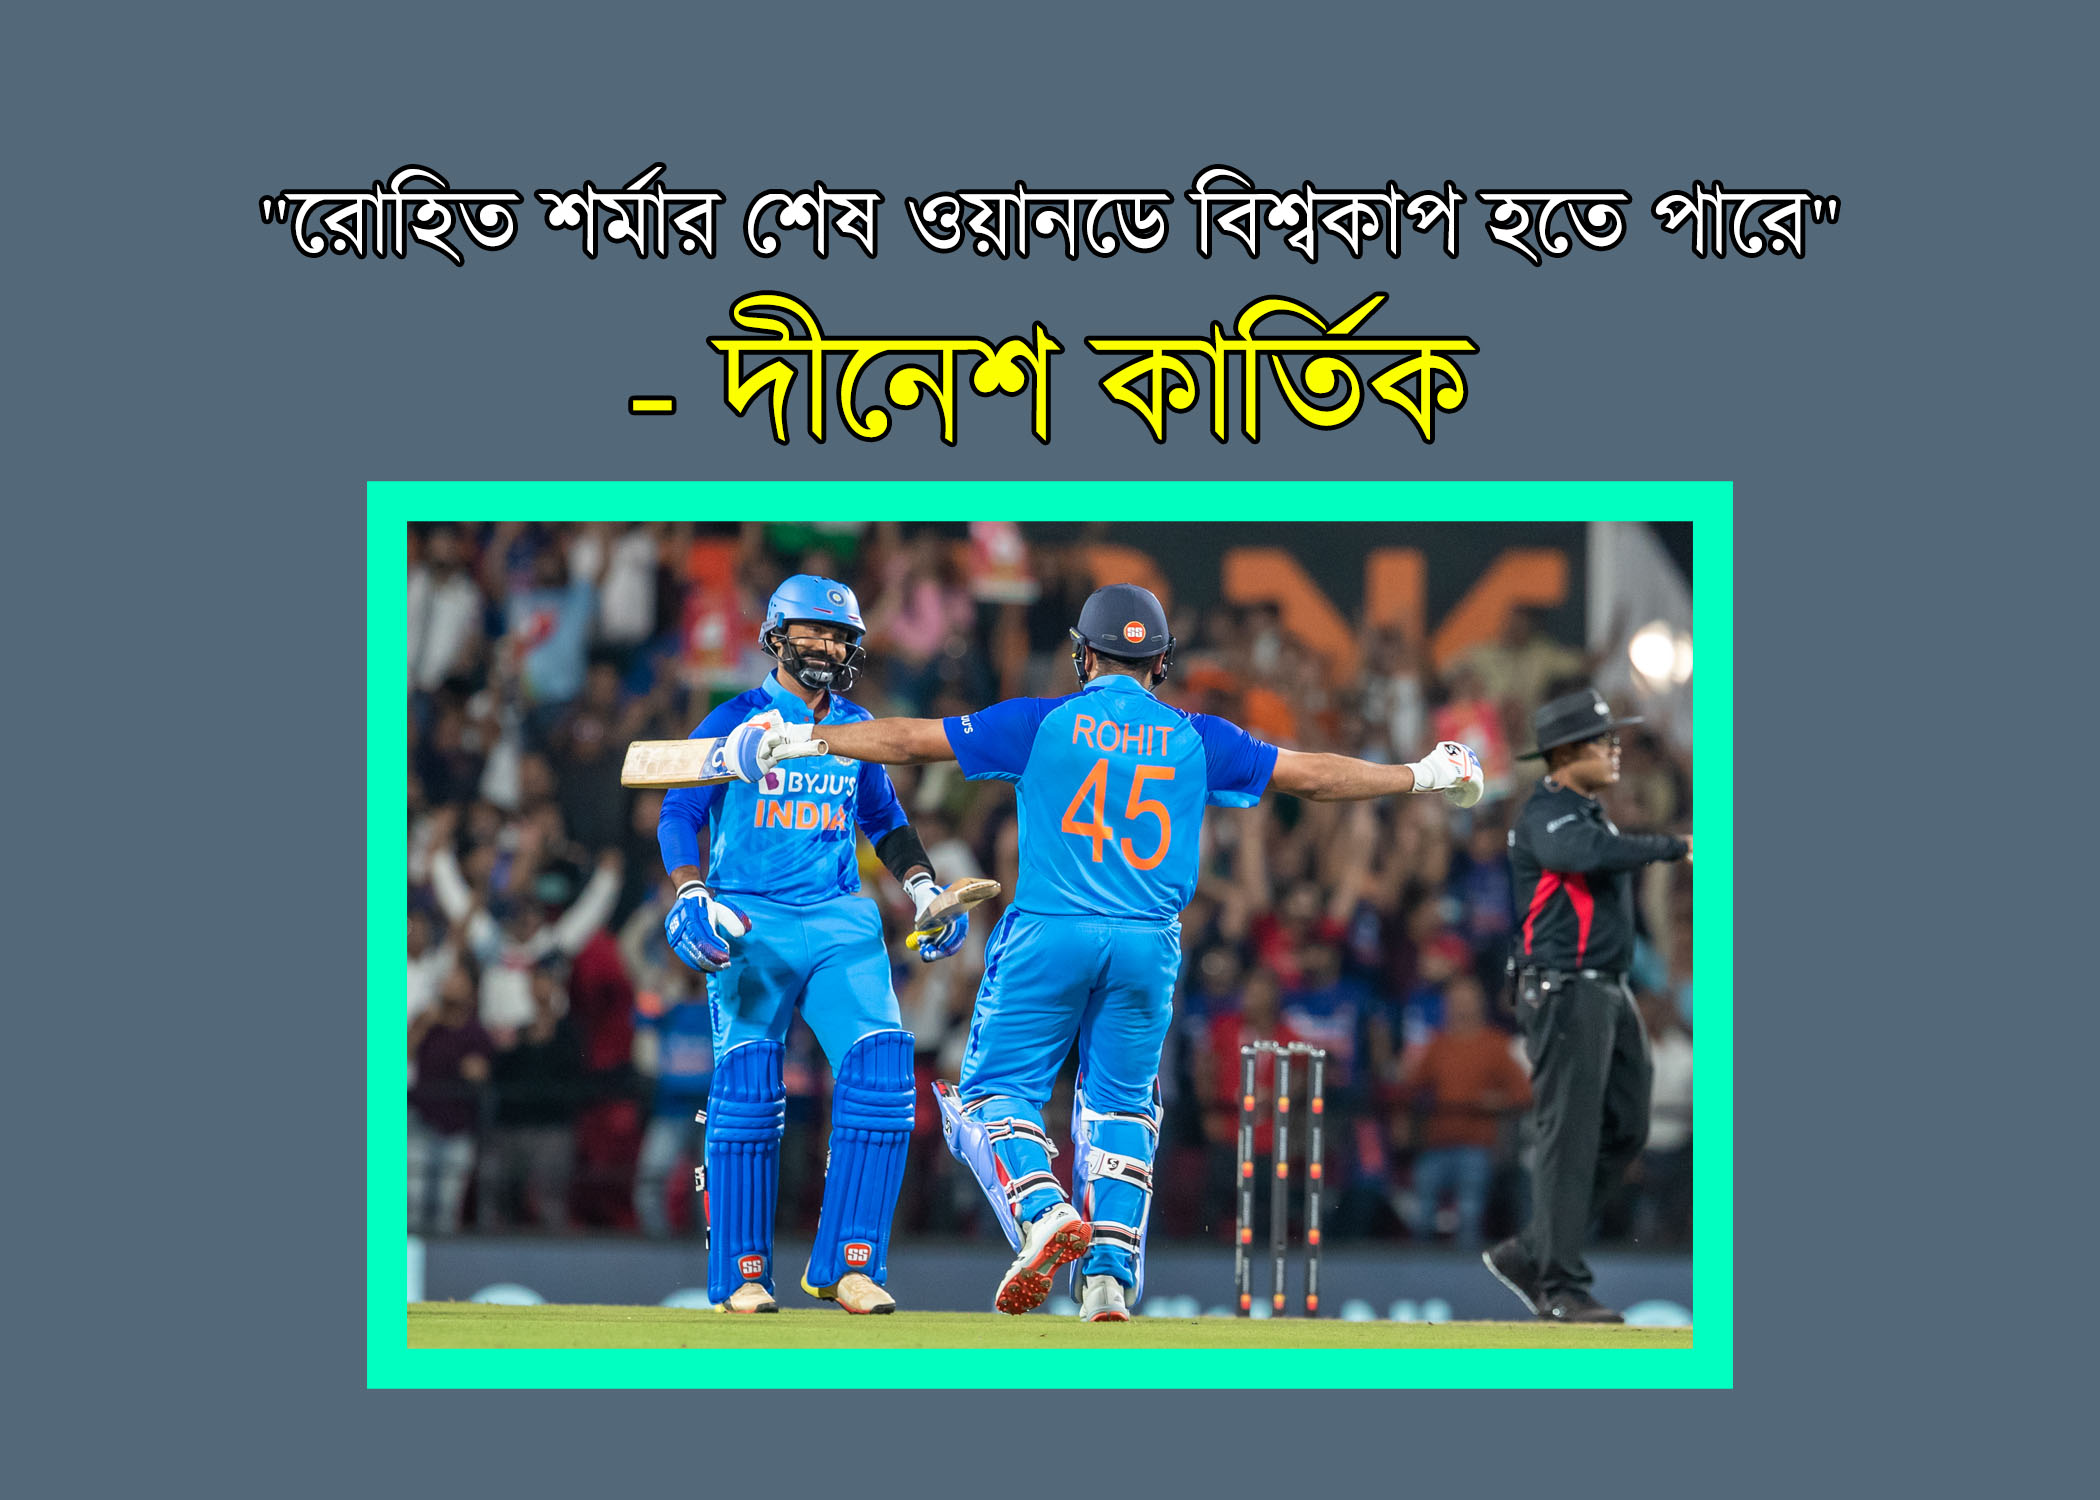 "Could be Rohit Sharma's last ODI World Cup" - Dinesh Karthik on Indian captain in Bangla | 2023, Could be Rohit Sharma's last ODI World Cup, Dinesh Karthik on Indian captain in Bangla, "রোহিত শর্মার শেষ ওয়ানডে বিশ্বকাপ হতে পারে" - ভারতীয় অধিনায়ক দীনেশ কার্তিক, রোহিত শর্মার শেষ ওয়ানডে বিশ্বকাপ হতে পারে, ভারতীয় অধিনায়ক দীনেশ কার্তিক, rohit sharma,odi world cup 2023,world cup 2023,rohit sharma world record,world cup,rohit sharma last world cup,icc world cup,world cup 2019,cricket world cup,rohit sharma 2019 world cup,rohit sharma world cup 2019,rohit sharma 2019 world cup 100,odi world cup,rohit sharma 2019 world cup vs pakistan,rohit sharma 2019 world cup century,rohit sharma 2019 world cup batting,rohit sharma new world record,how will be rohit sharma's fitness, dinesh karthik,dinesh karthik batting,dinesh karthik what achieved in indian cricket,india vs afghanistan dinesh karthik bowling,did dinesh karthik captain india?,dinesh karthik new captain for india team kannada,dinesh karthik and 11 captains,dinesh karthik play under 12 captain,dinesh karthik bowling,dinesh karthik bowl,dinesh karthik under 11 captains,dinesh karthik played international cricket under 11 captains,why dinesh karthik bowling, রোহিত শর্মা,ওয়ানডে বিশ্বকাপ,রোহিত শর্মা কান্না,সুপার ফোরের আগেই রোহিত শর্মাকে যেকারনে সাবধান করে দিল গৌতম,ভারতের বিশ্বকাপ দল,কেমন হলো ভারতের বিশ্বকাপ দল,ওডিআই বিশ্বকাপ,ওডিআই বিশ্বকাপ ২০২৩,আইসিসি বিশ্বকাপ 2019,ক্রিকেট বিশ্বকাপ ২০২৩,ক্রিকেট বিশ্বকাপ 2023,ক্রিকেট বিশ্বকাপ ২০১৯,বিশ্বকাপের খবর,২০১৫ বিশ্বকাপ পরবর্তী দলগুলোর পারফরমেন্সের পরিসংখ্যান,বিশ্বকাপ ক্রিকেট ২০২৩ সময়সূচী,আহারে কান্না! এমন লজ্জার হার সইতে না পেরে কাঁদতে কাঁদতে বেহুস রোহিত শর্মা! rohit crying, ওয়ানডে বিশ্বকাপ কবে,ওয়ানডে বিশ্বকাপ ২০২৩ সময়সূচি,ওয়ানডে বিশ্বকাপ 2023 সময়সূচি,ওয়ানডে বিশ্বকাপ,ওয়ানডে বিশ্বকাপ ২০২৩,ওয়ানডে বিশ্বকাপ ২০২৩,ওয়ানডে বিশ্বকাপ 2023,ওয়ানডে বিশ্বকাপ 2023 কবে,আইসিসি ওয়ানডে বিশ্বকাপ ২০২৩,ওয়ানডে বিশ্বকাপ 2023 সময়সুচি,২০২৩ ওয়ানডে বিশ্বকাপ বাংলাদেশ দল,ওয়ানডে বিশ্বকাপের সময়সূচি,2023 ওয়ানডে বিশ্বকাপের সময়সূচি,ওয়ানডে বিশ্বকাপ বাংলাদেশে,ওয়ানডে বিশ্বকাপ ২০২৩ এর শিডিউল,2023 বিশ্বকাপ সময়সূচী,ওডিআই বিশ্বকাপ ২০২৩,